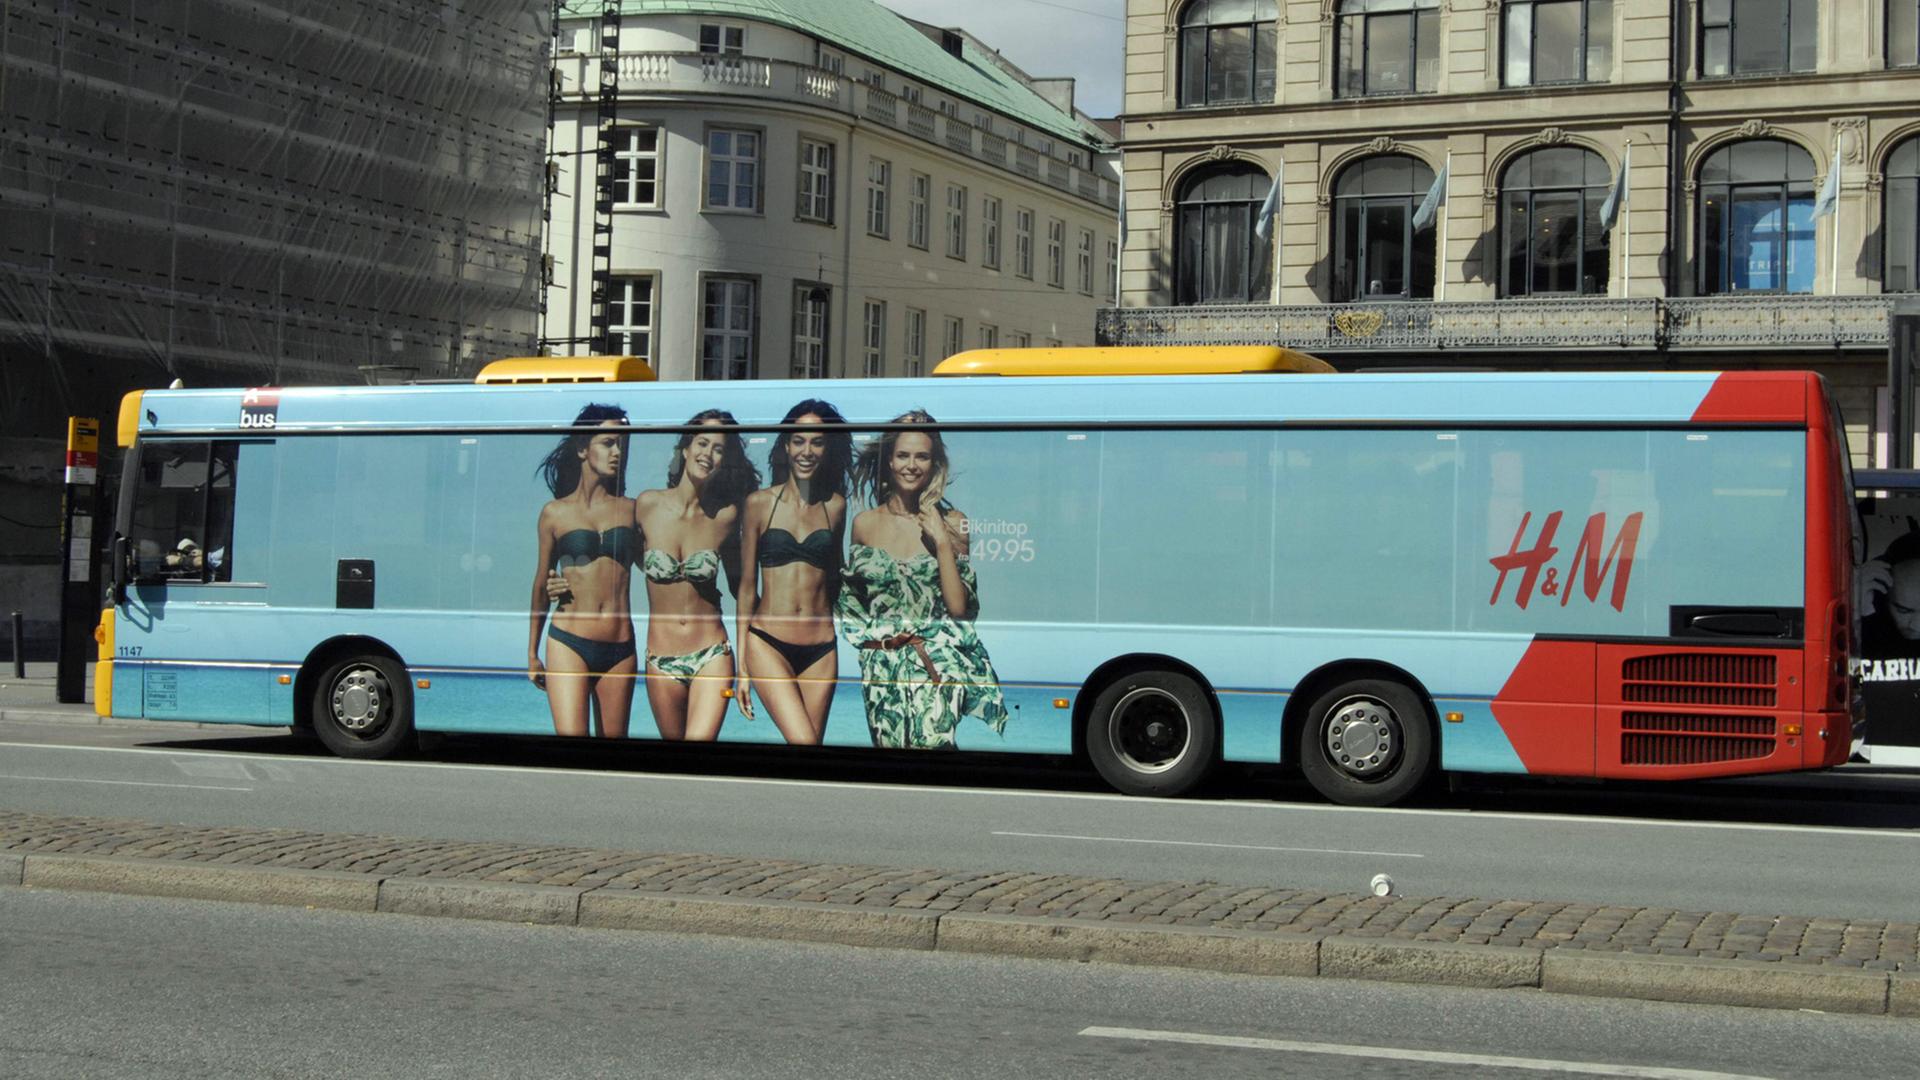 Ein Bus mit Bademoden-Werbung in Kopenhagen